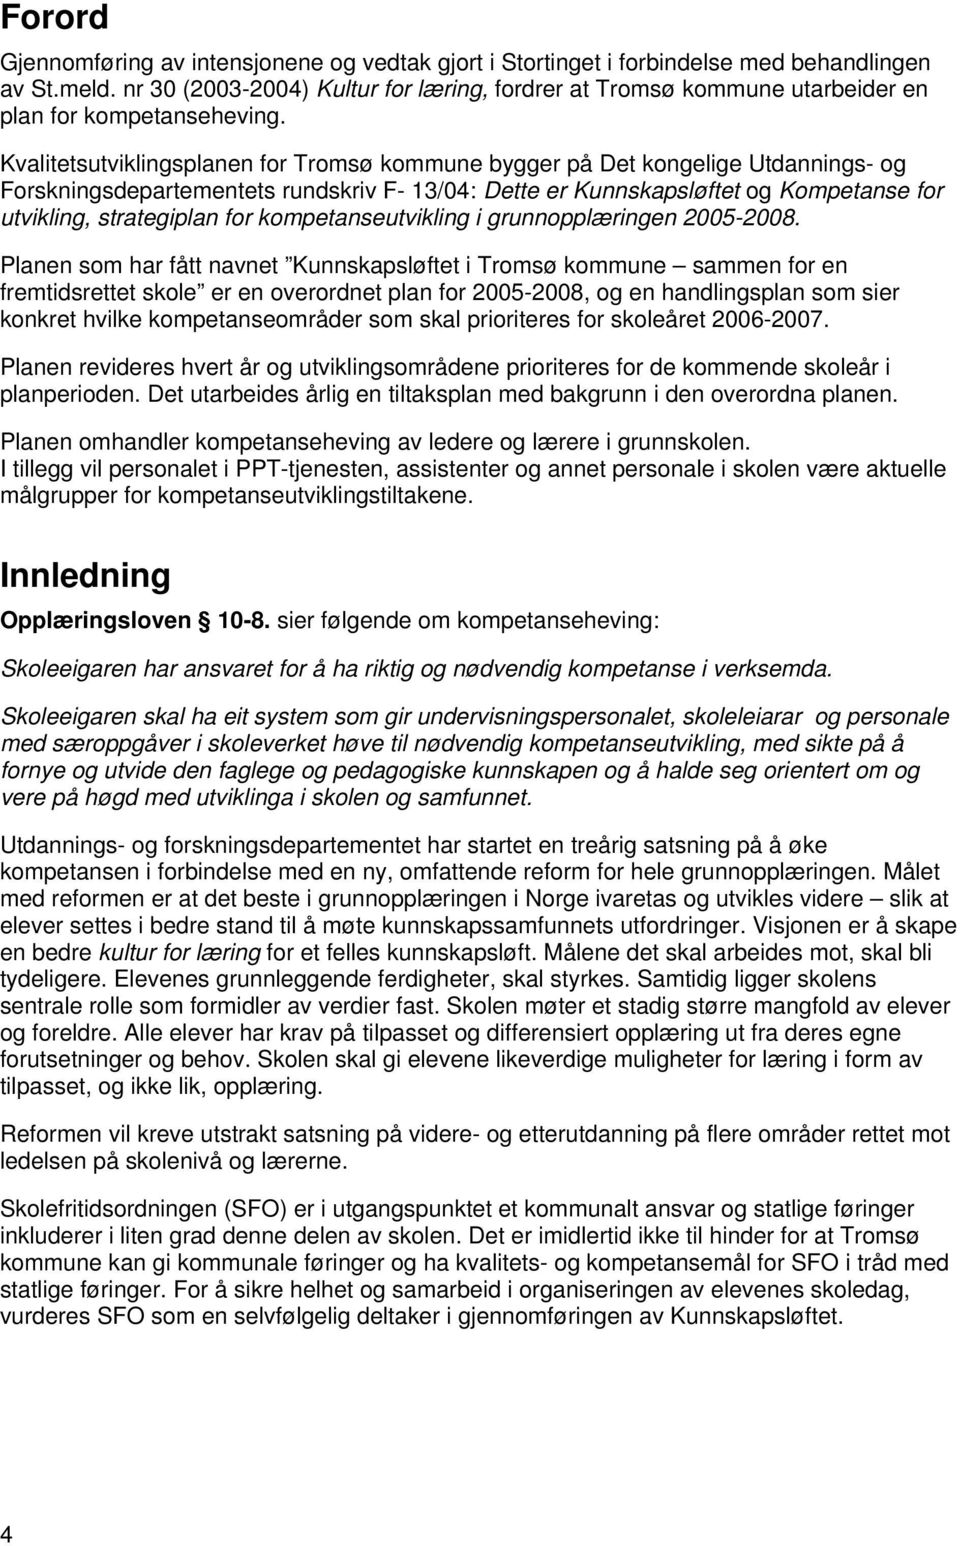 Kvalitetsutviklingsplanen for Tromsø kommune bygger på Det kongelige Utdannings- og Forskningsdepartementets rundskriv F- 13/04: Dette er Kunnskapsløftet og Kompetanse for utvikling, strategiplan for